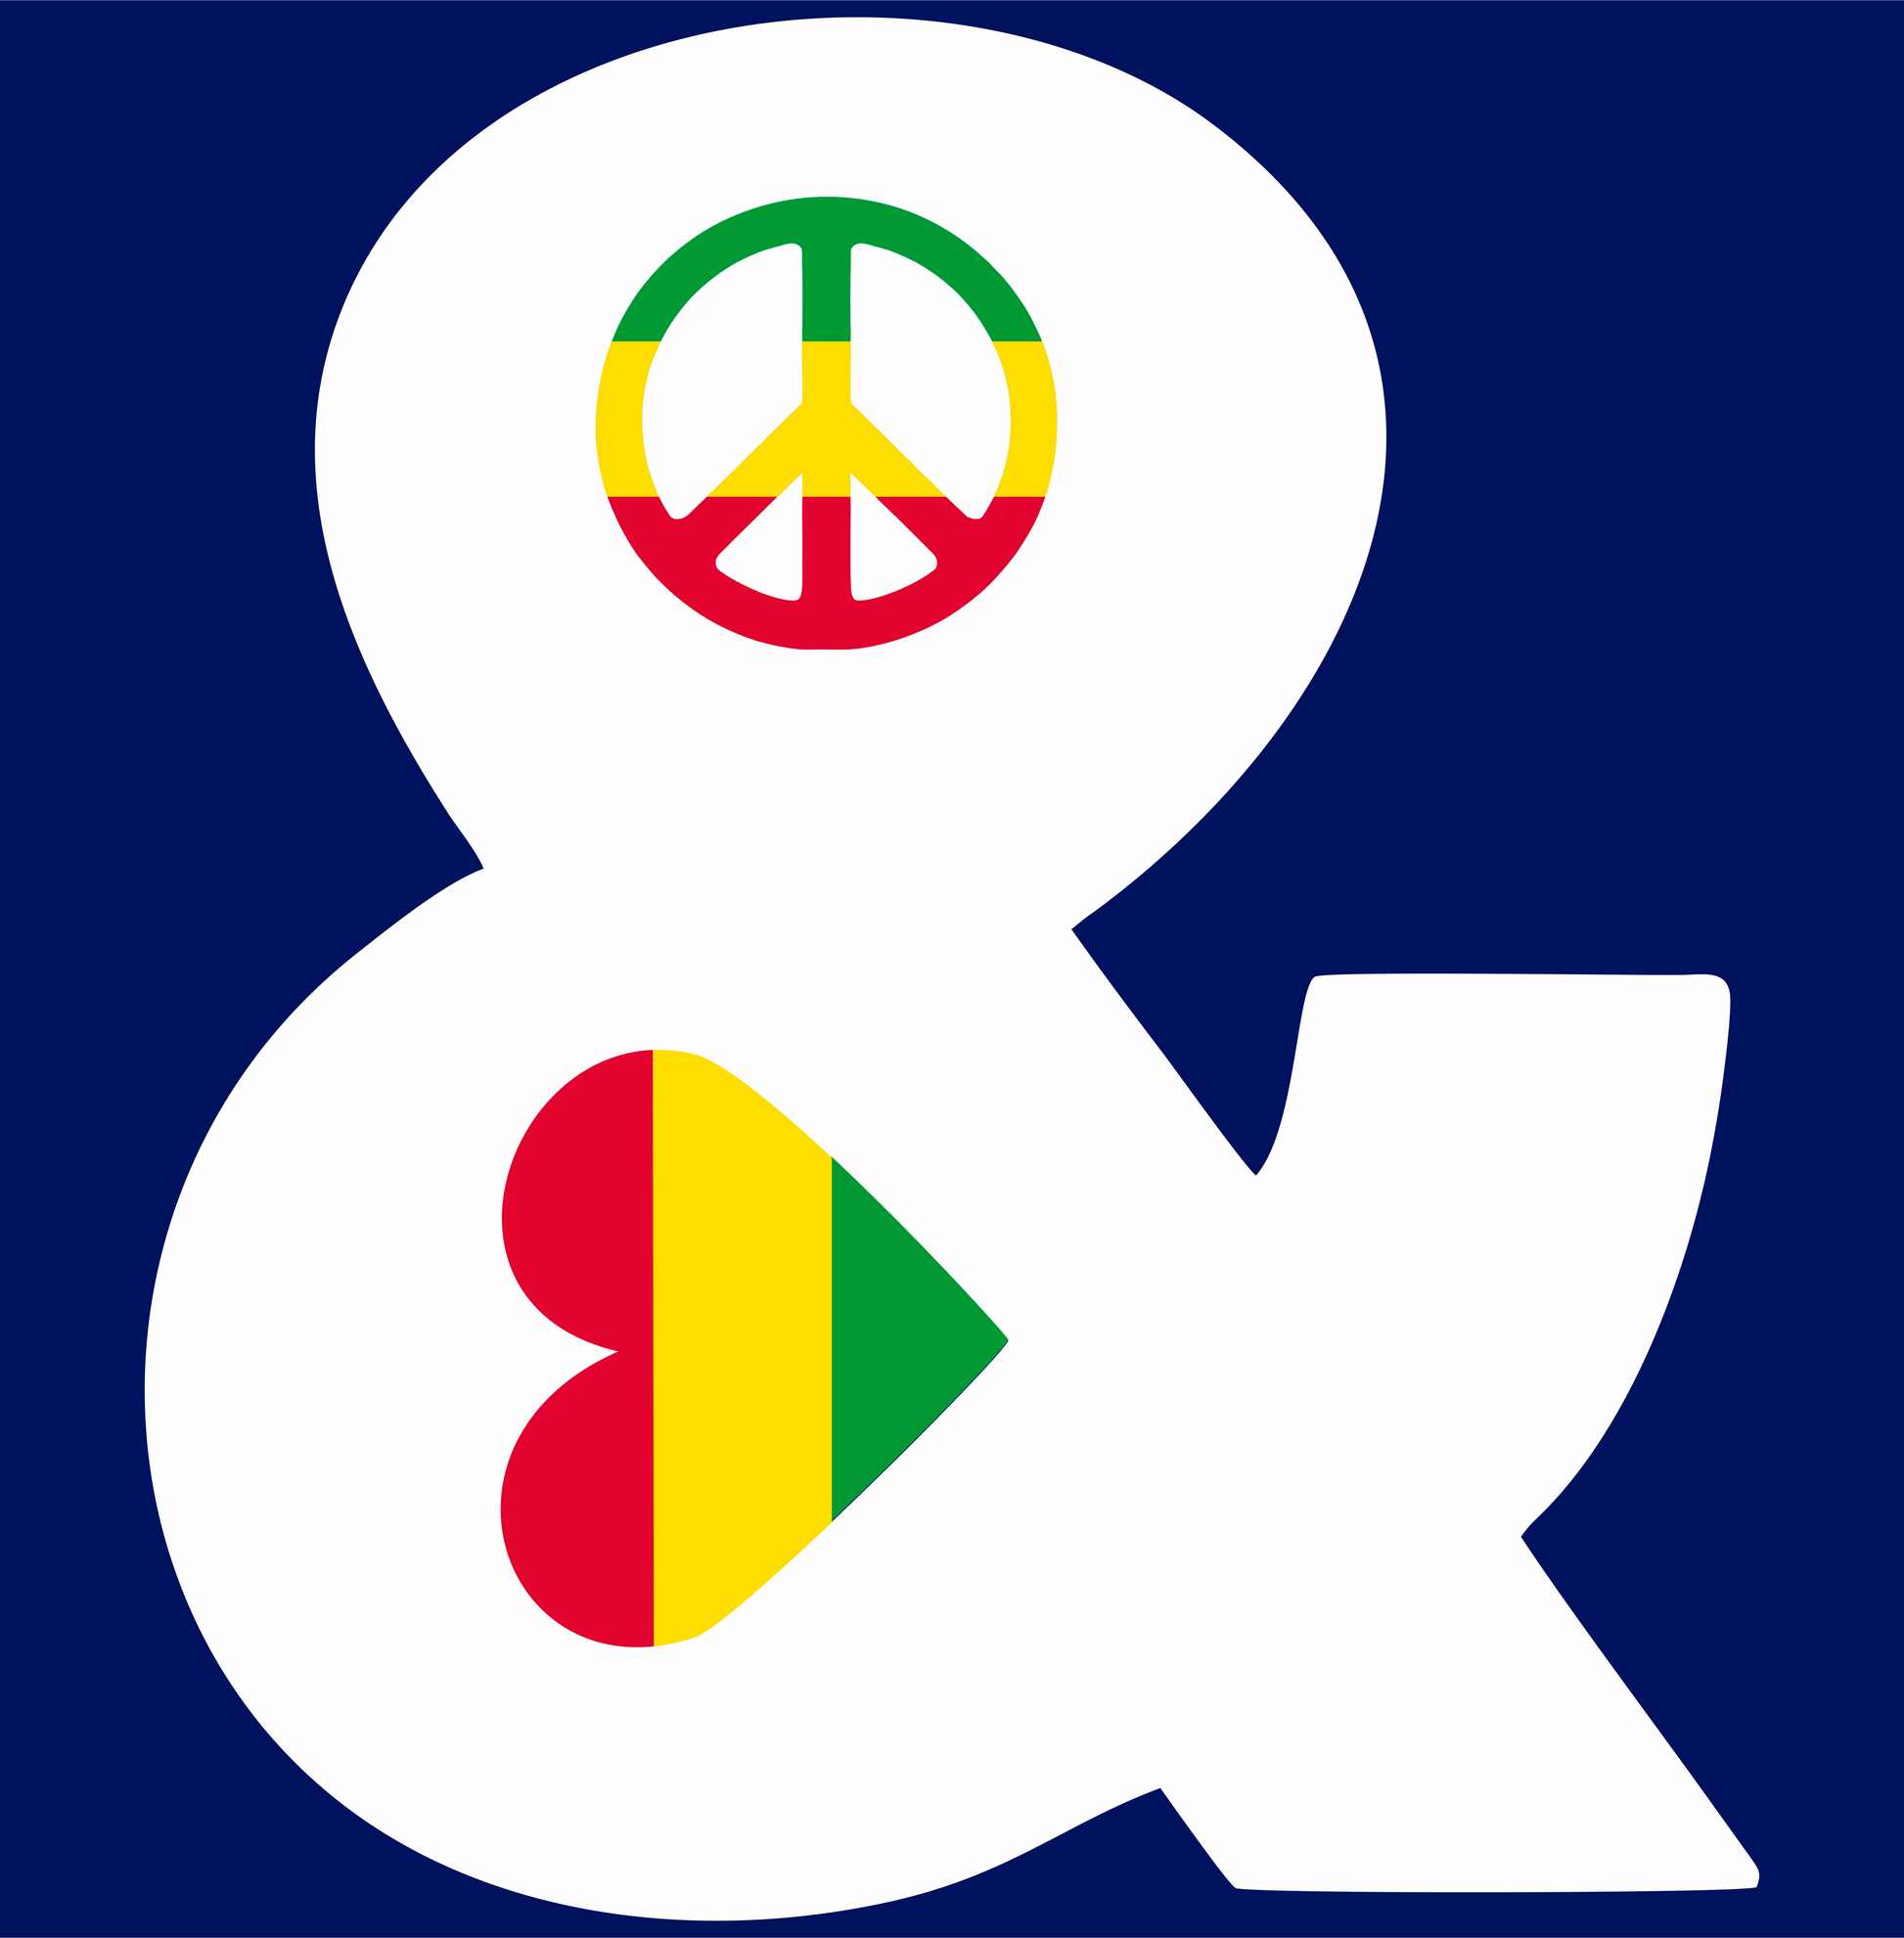 peace & love symbol DTG design graphic